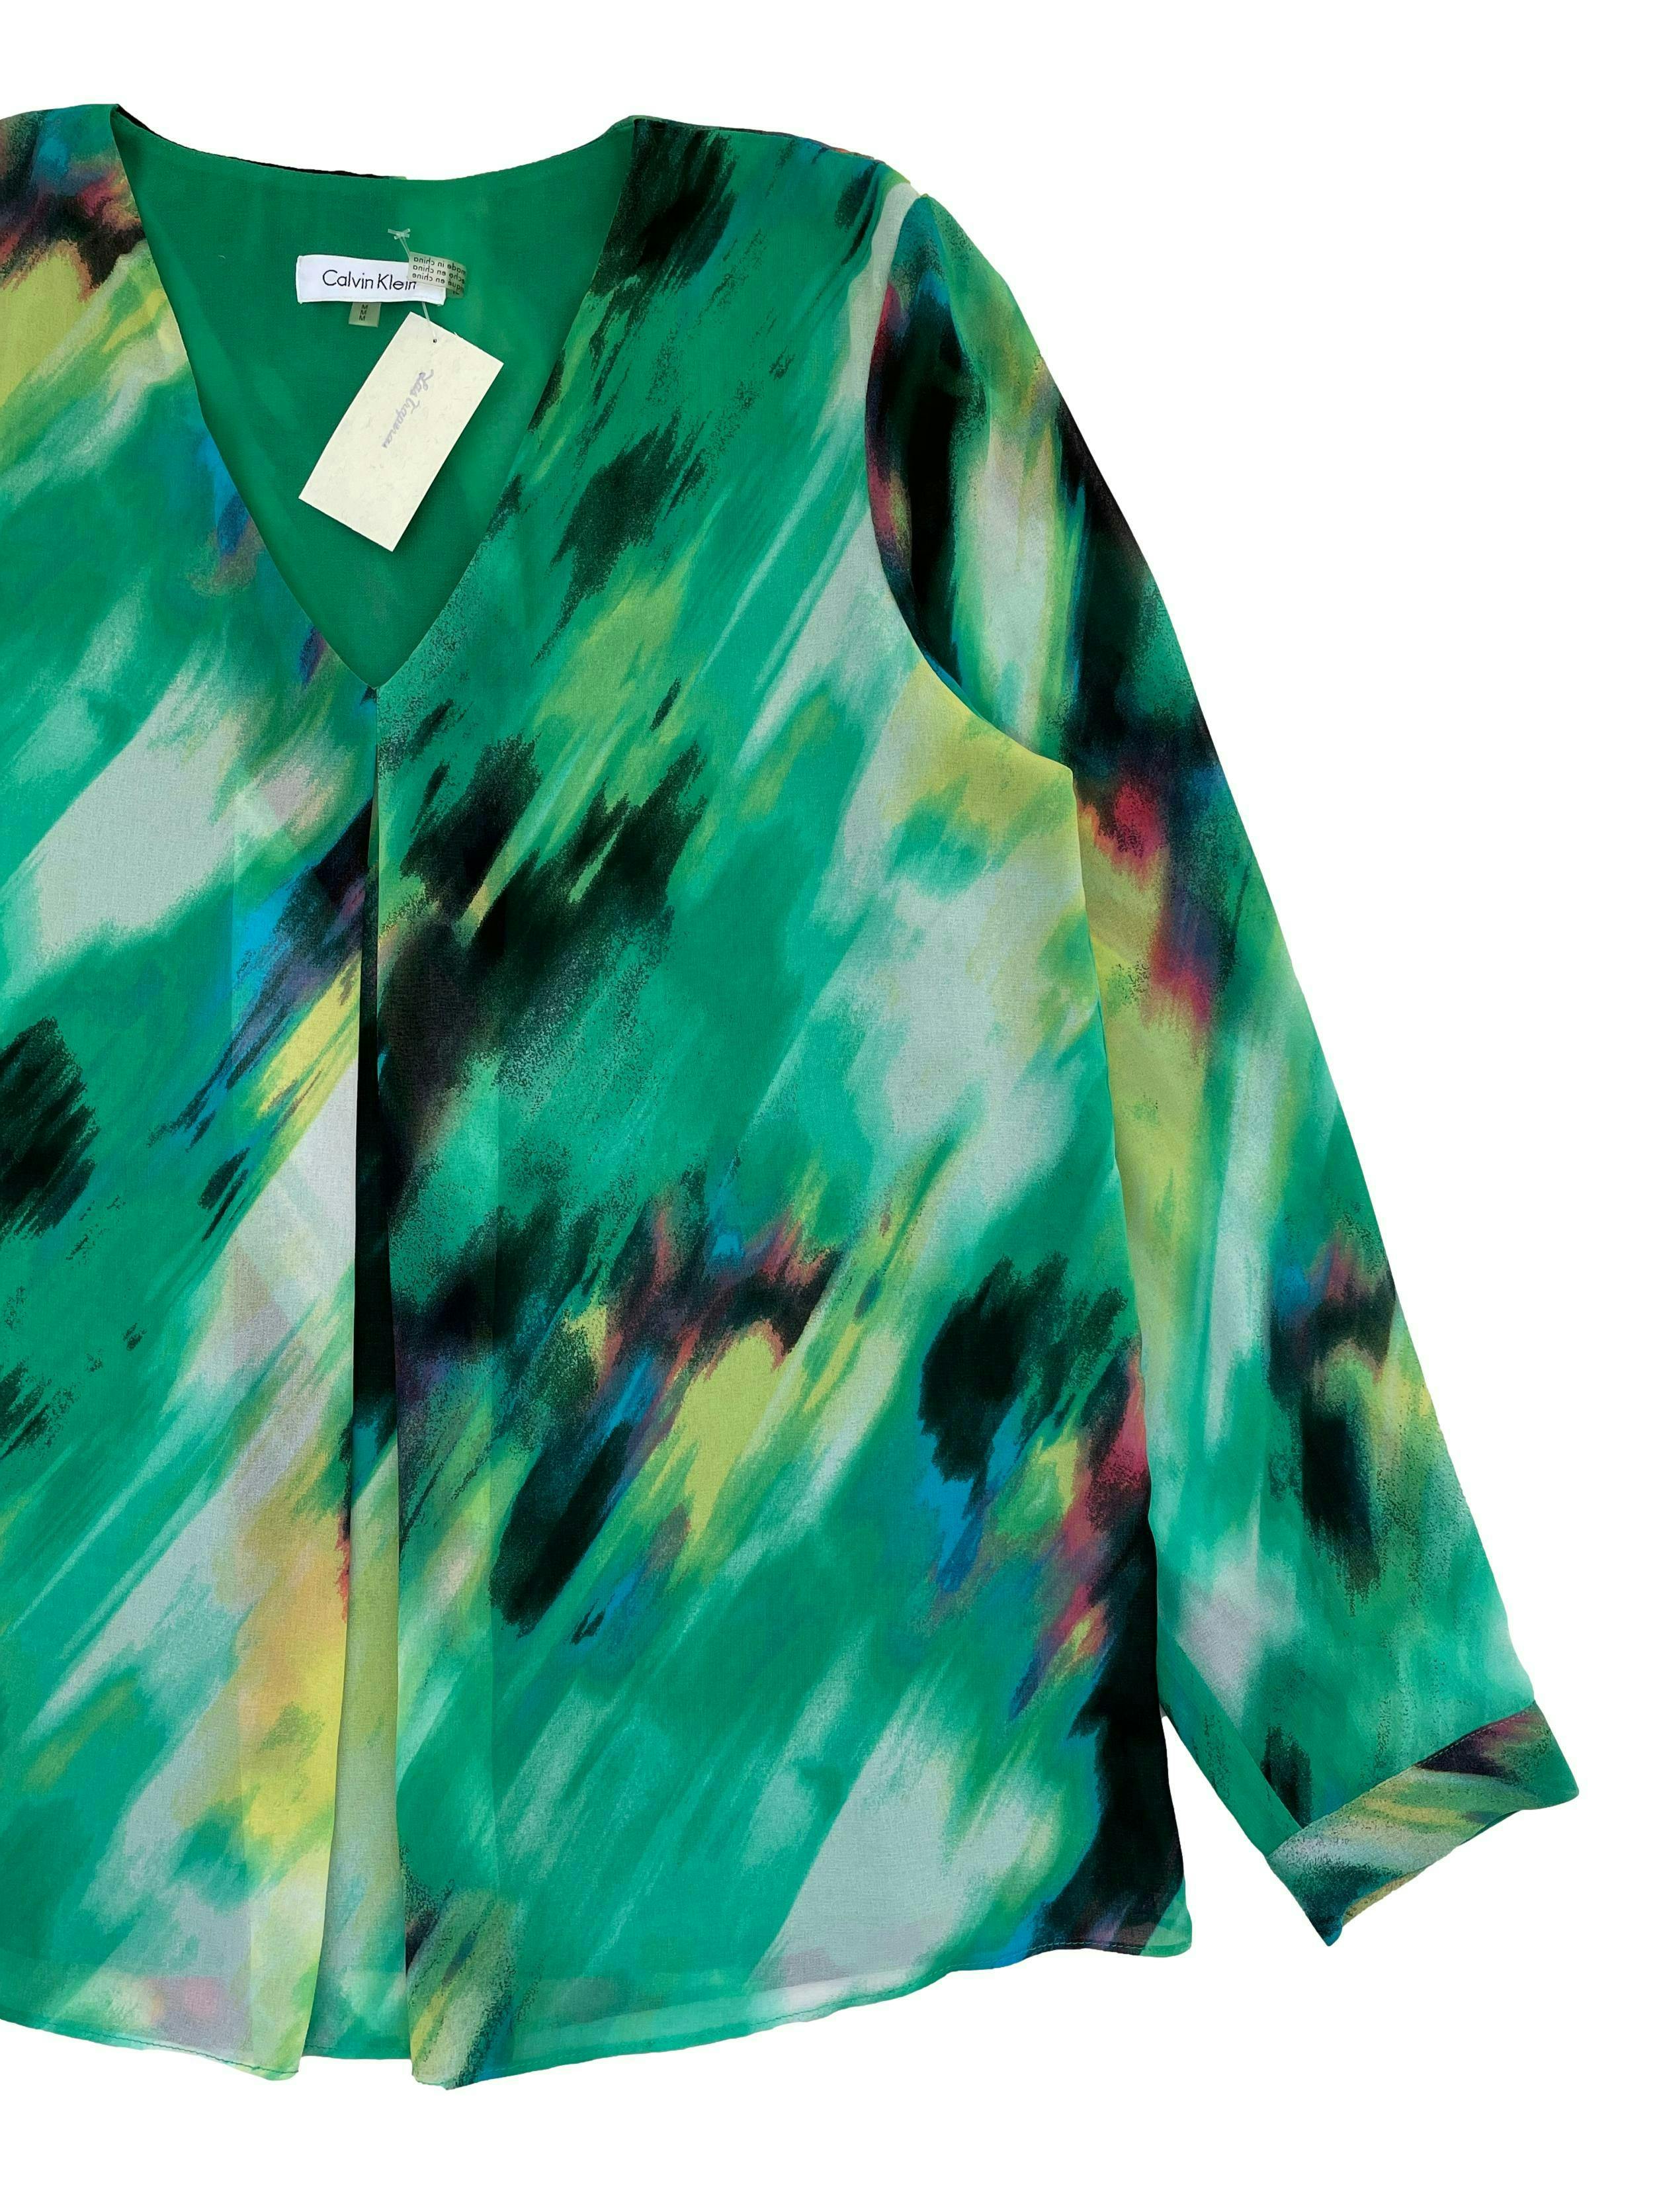 Blusa Calvin Klein de gasa verde con estampado de colores, escote en V, cuerpo forrado, fit suelto. Busto 102cm Largo 65cm. Precio original S/ 300